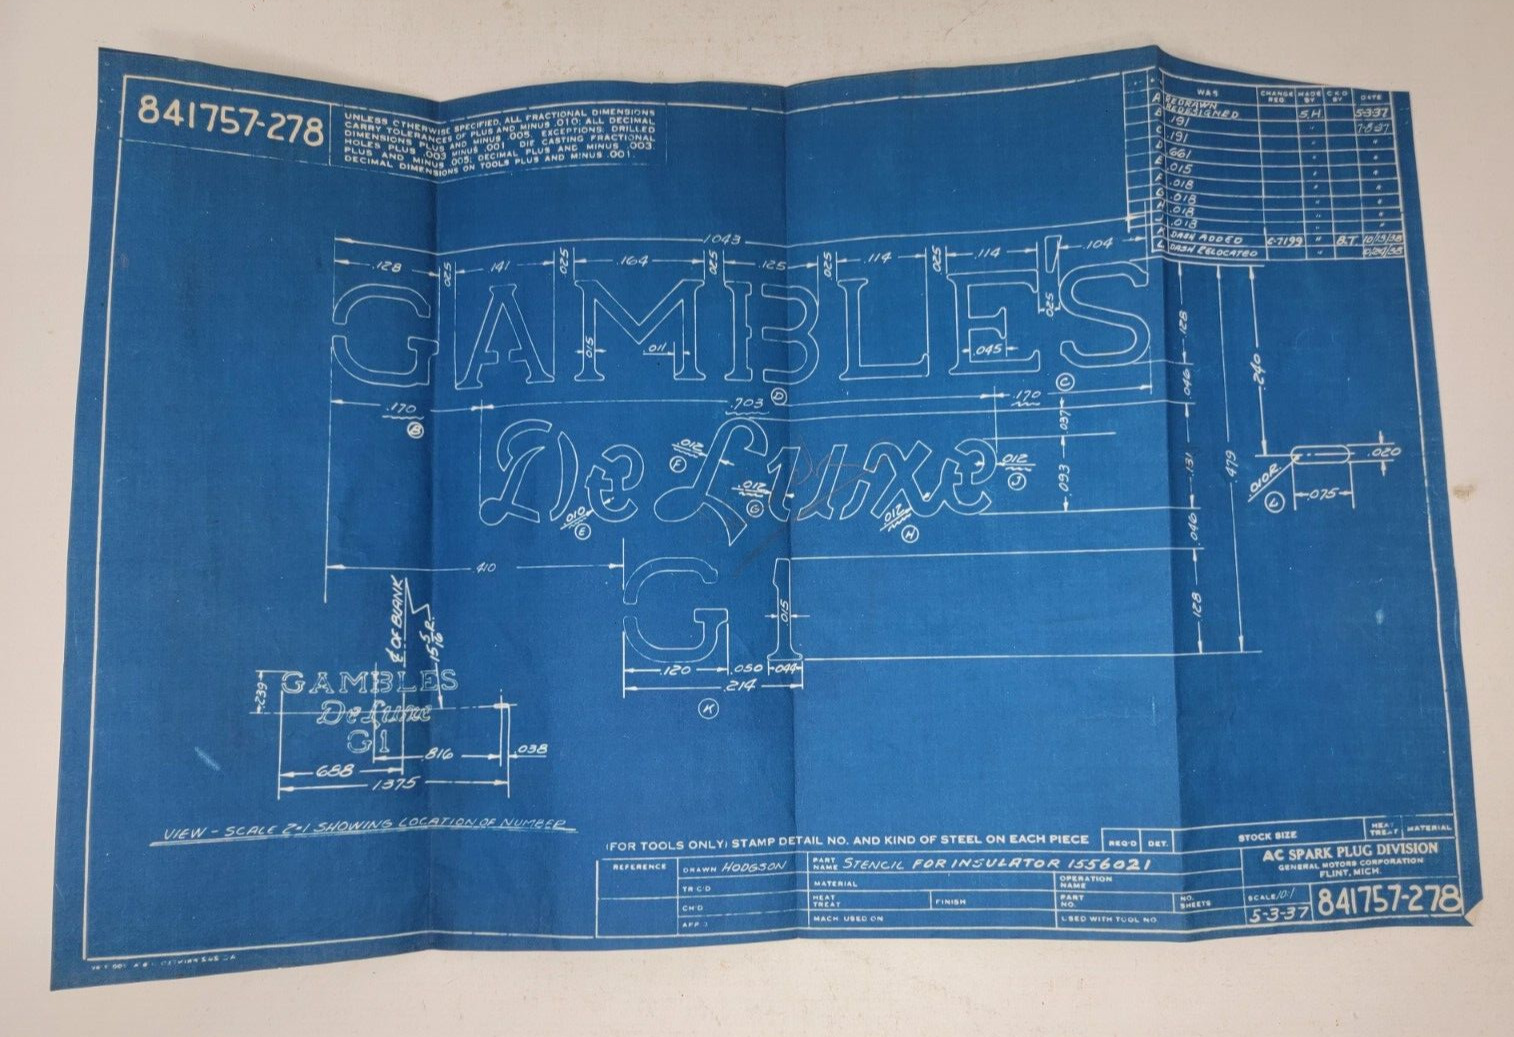 ANTIQUE AC SPARK PLUG Original Blueprint Authentic Dated 1937 - Gambles De Luxe